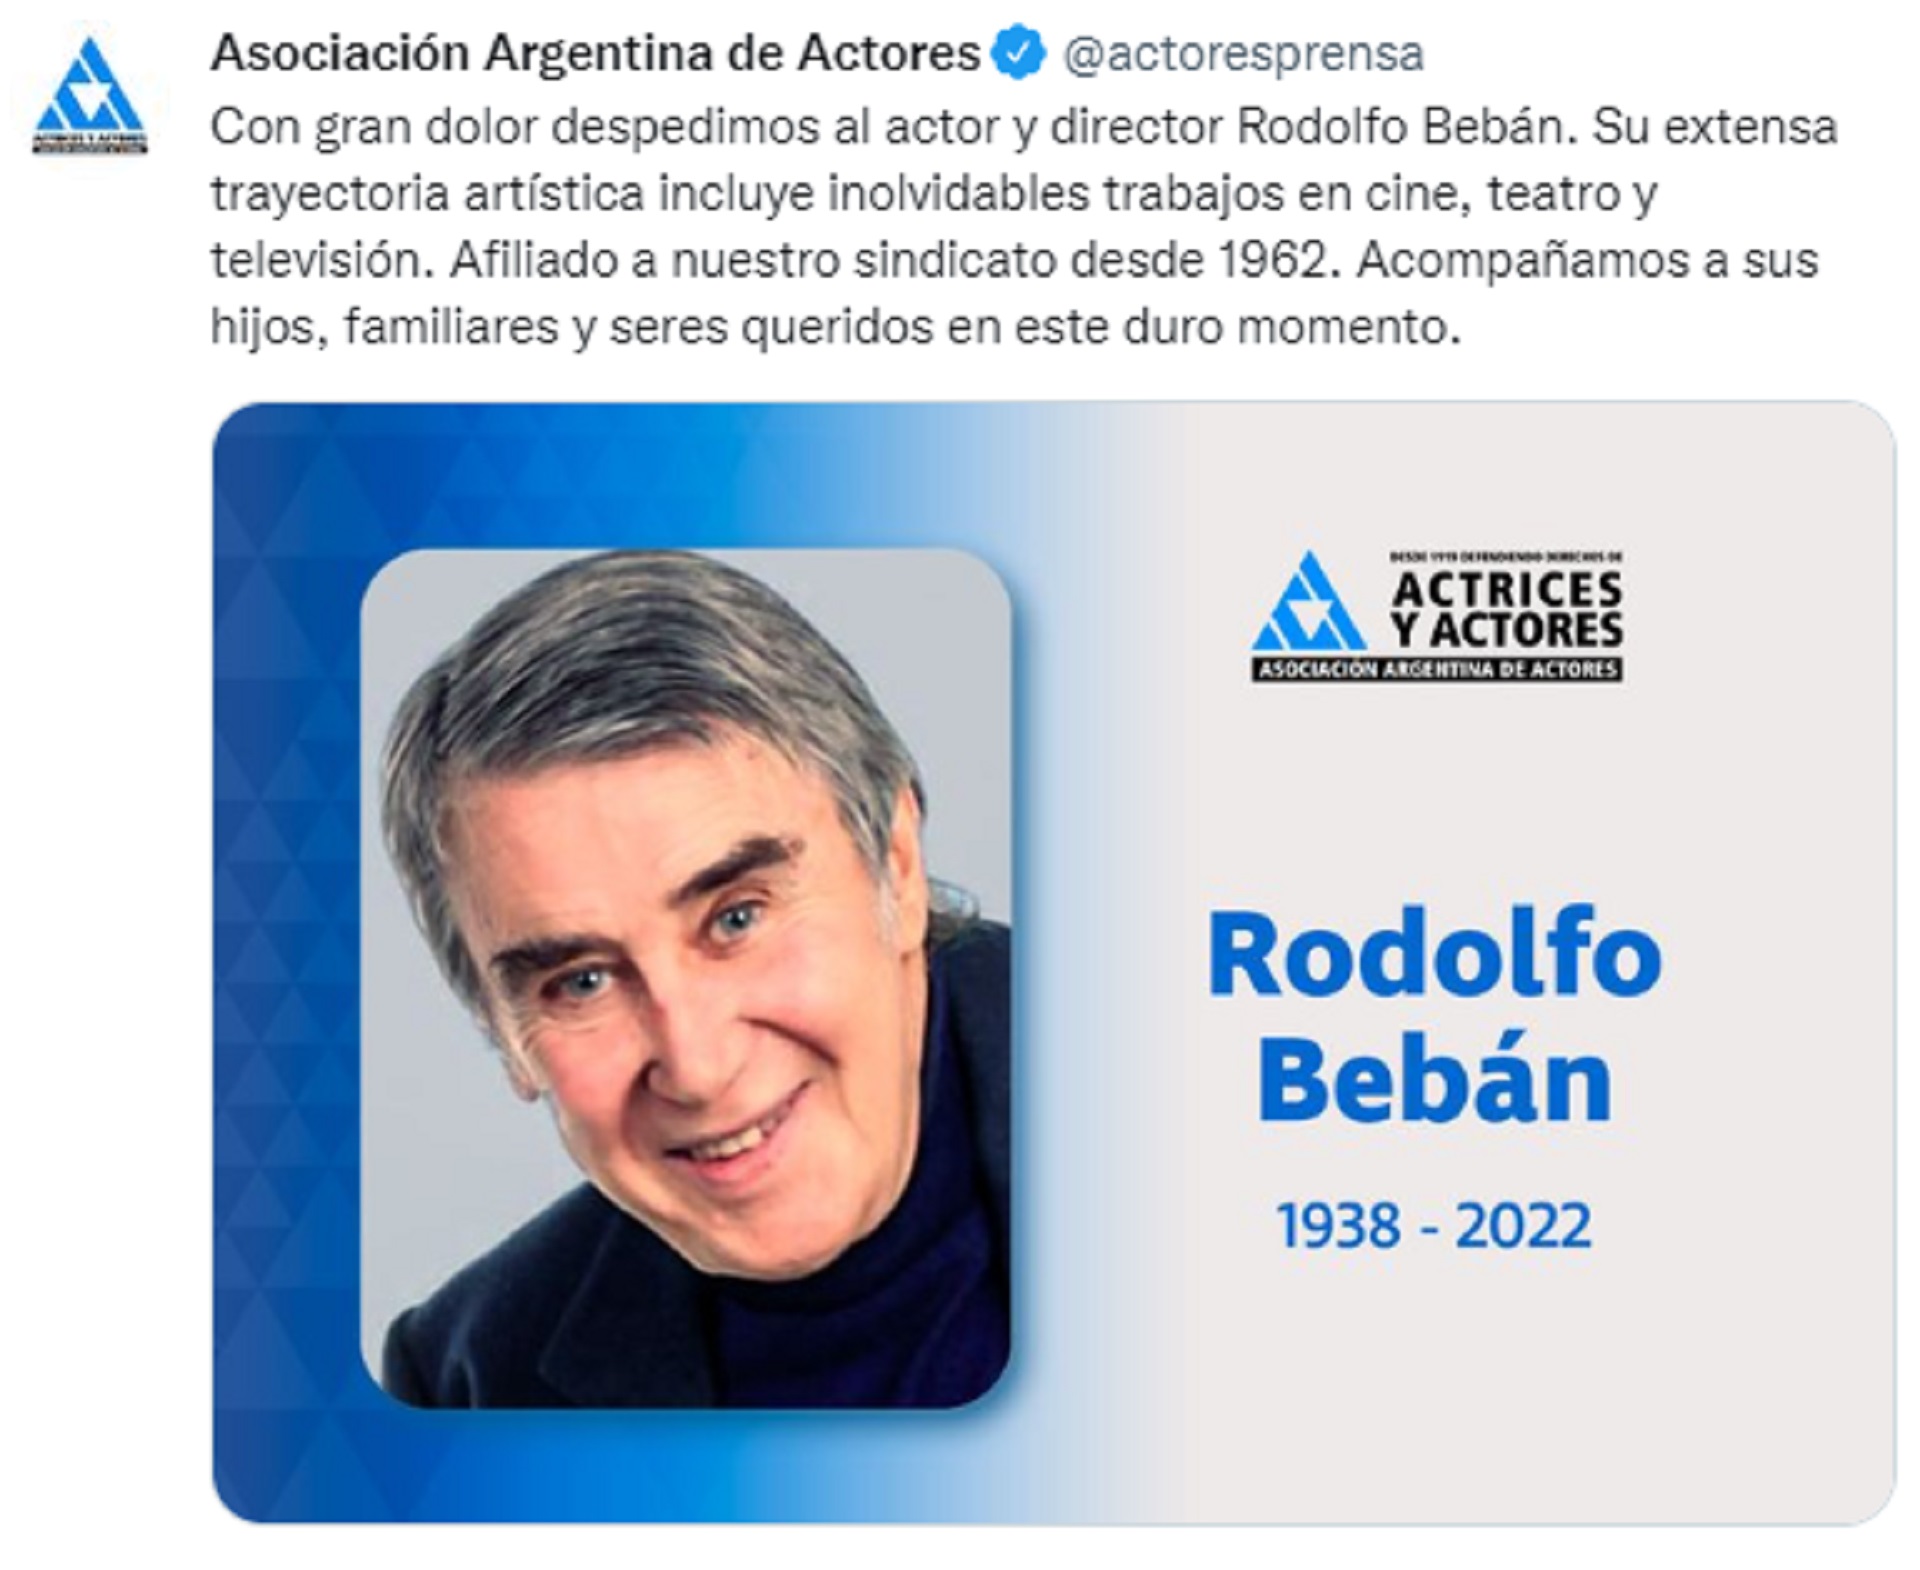 El mensaje de la Asociación Argentina de Actores